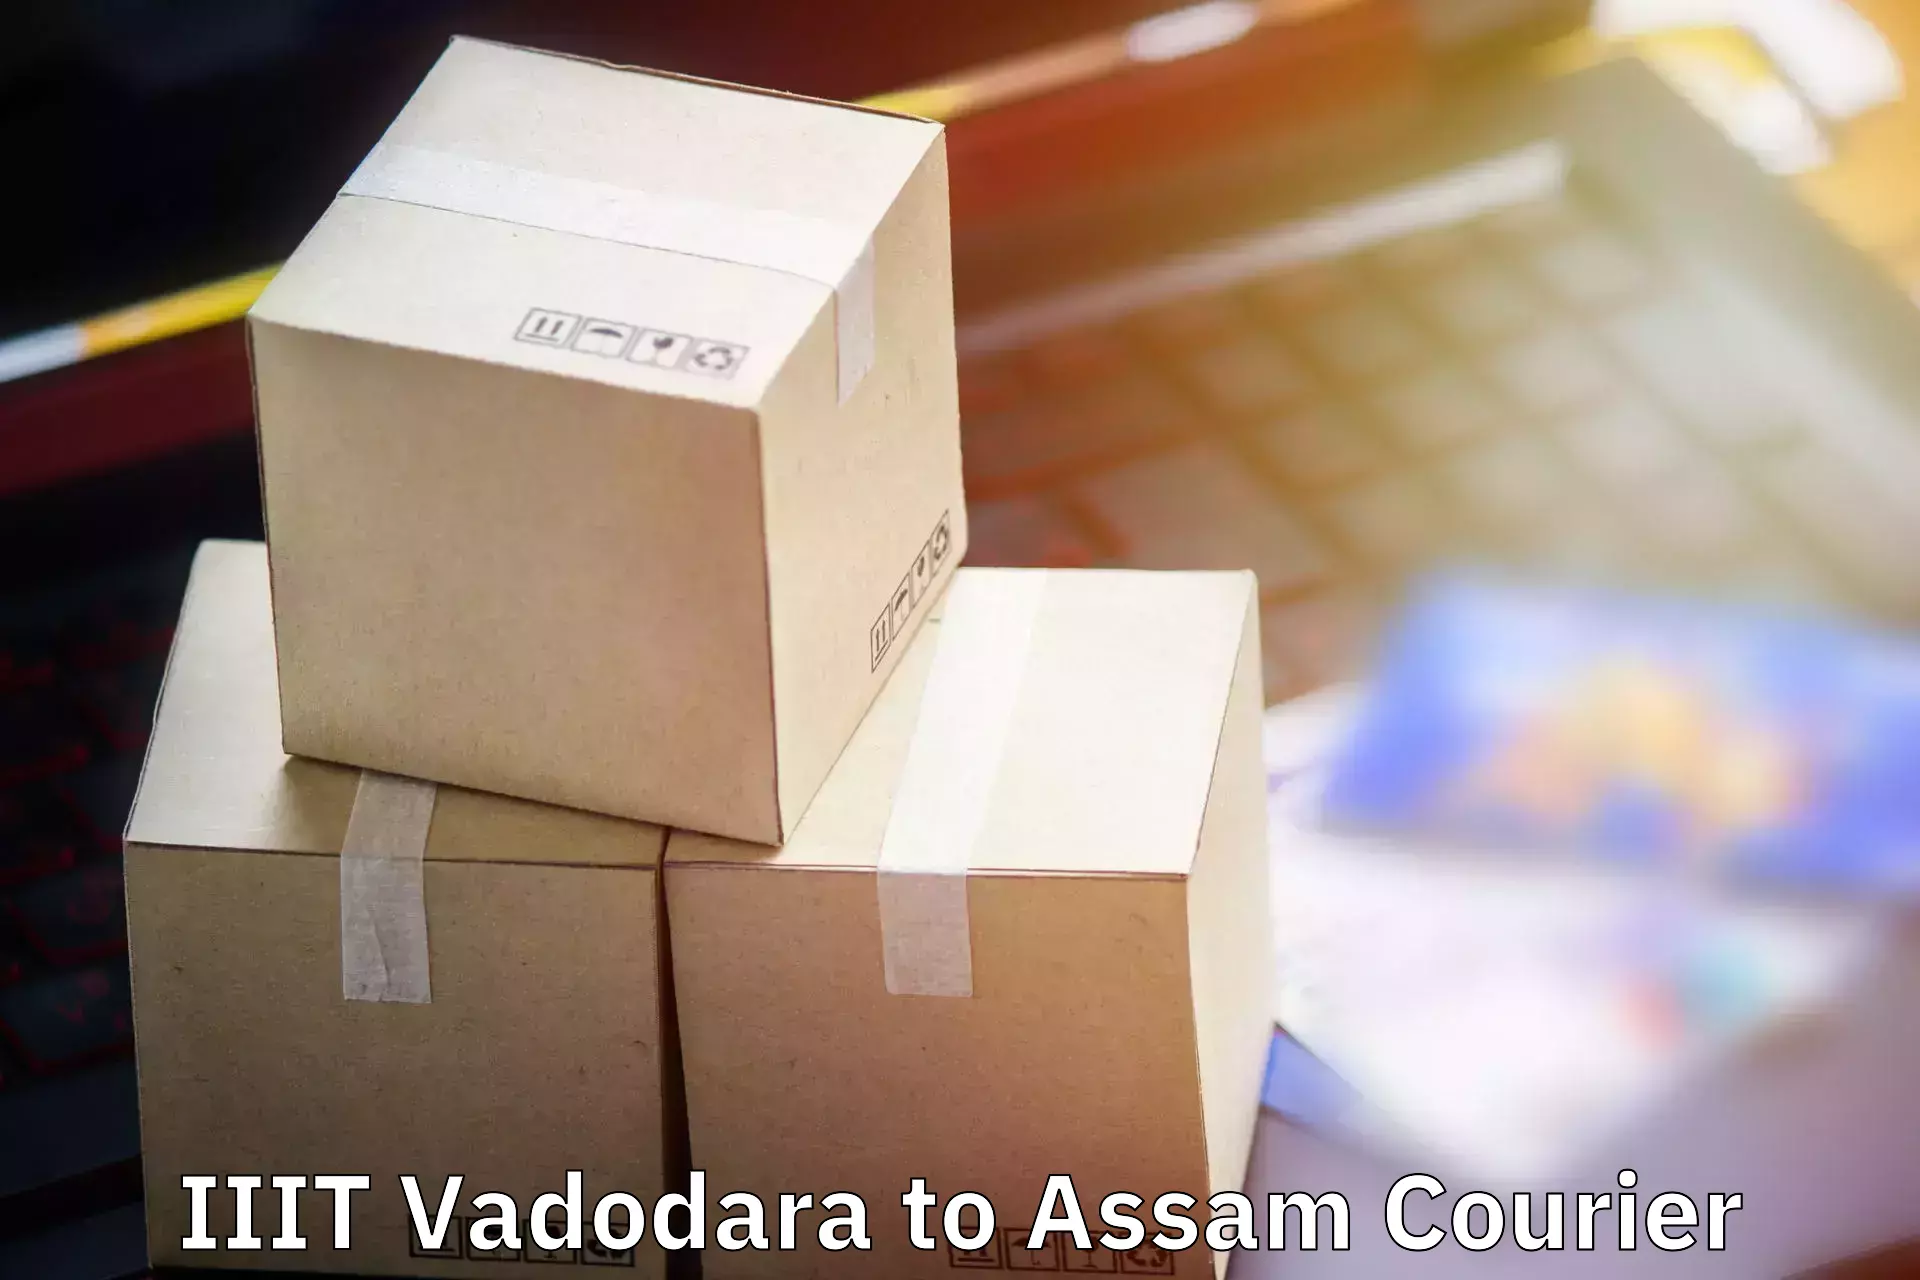 Luggage transit service IIIT Vadodara to Lala Assam